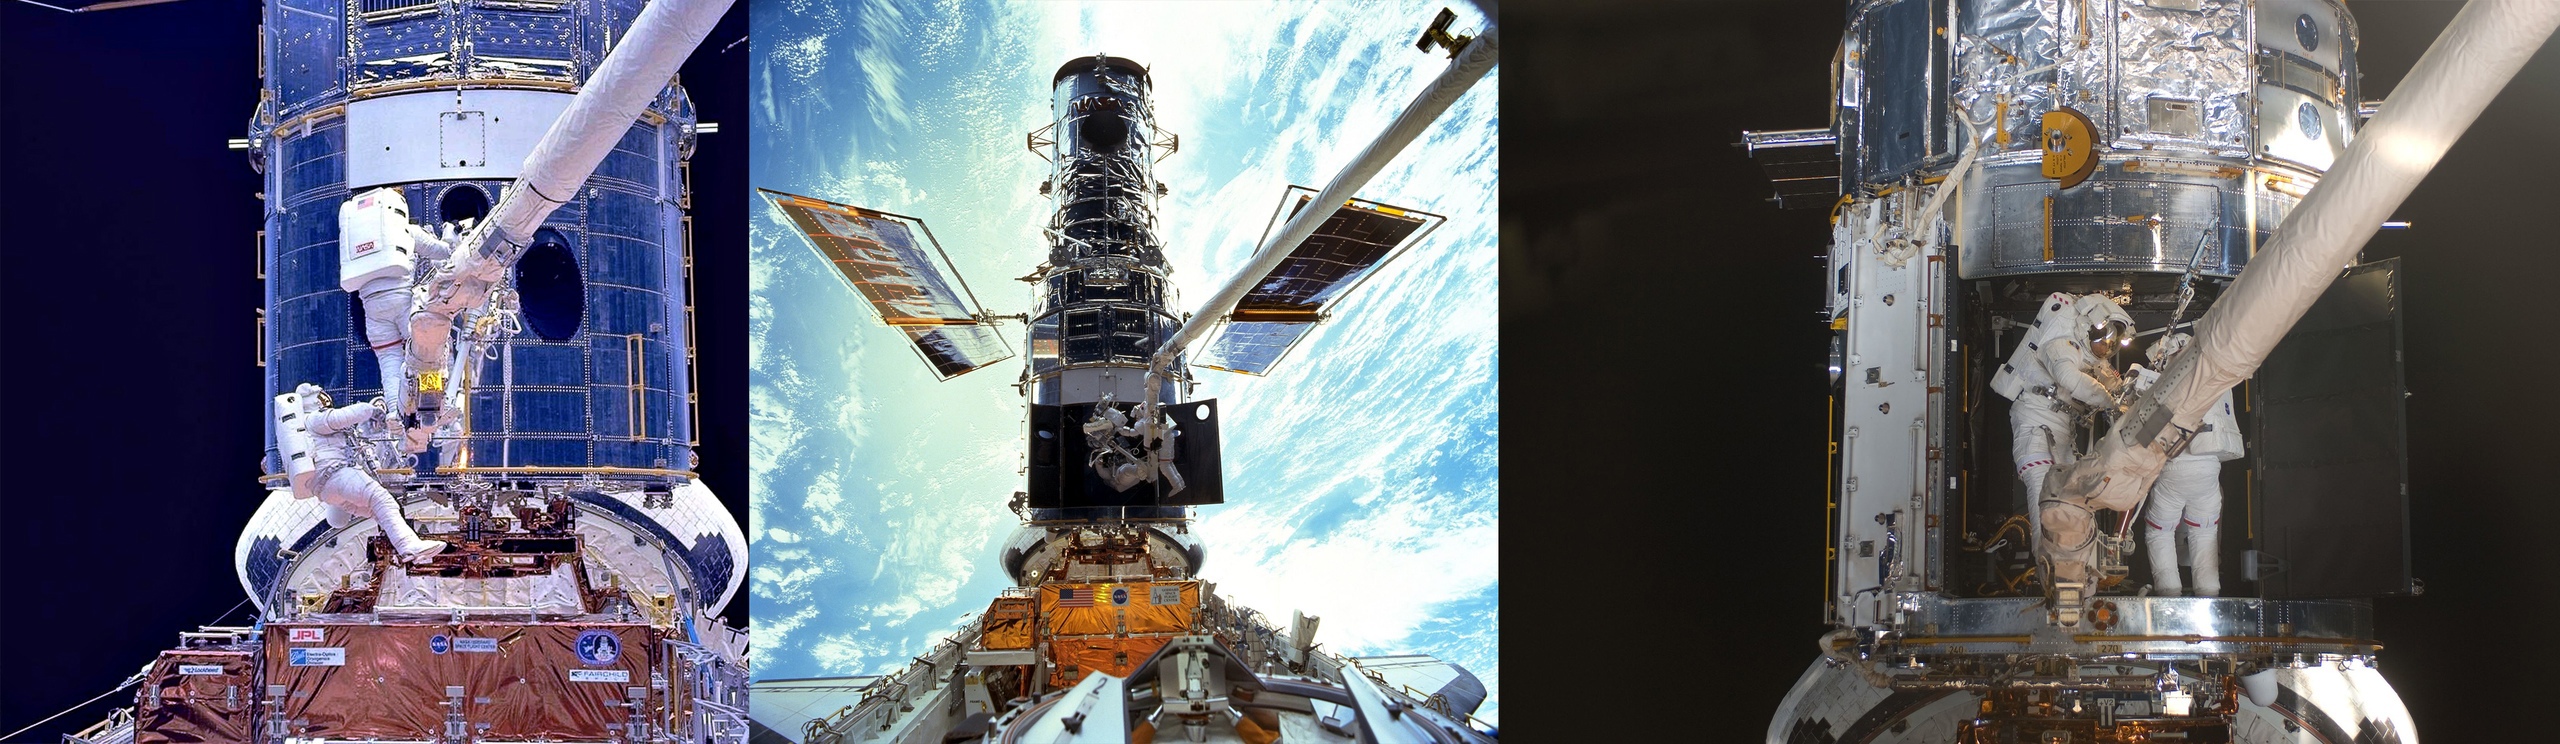 Слева — первая экспедиция по установке линзы 1993 года, в центре — третья экспедиция 1999 года по замене вышедших из строя гироскопов, справа — четвертая экспедиция 2009 года по замене опять гироскопов и много чего еще